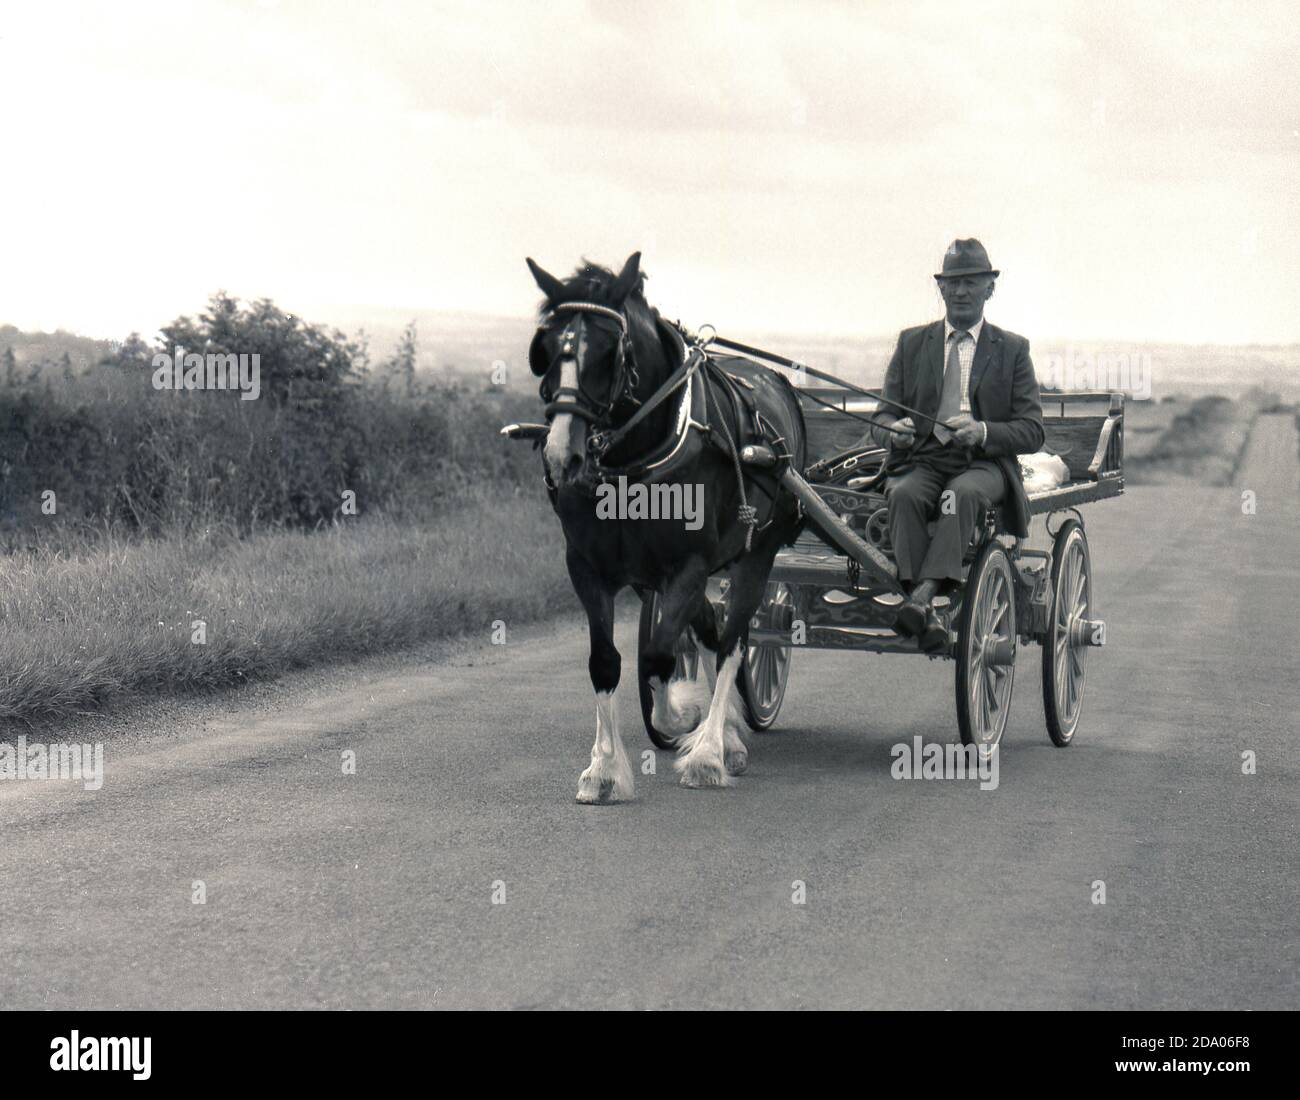 1980s, historique, un gentleman conduisant une voiturette et un cheval le long d'une route de campagne vide, Yorkshire, Angleterre, Royaume-Uni. Banque D'Images